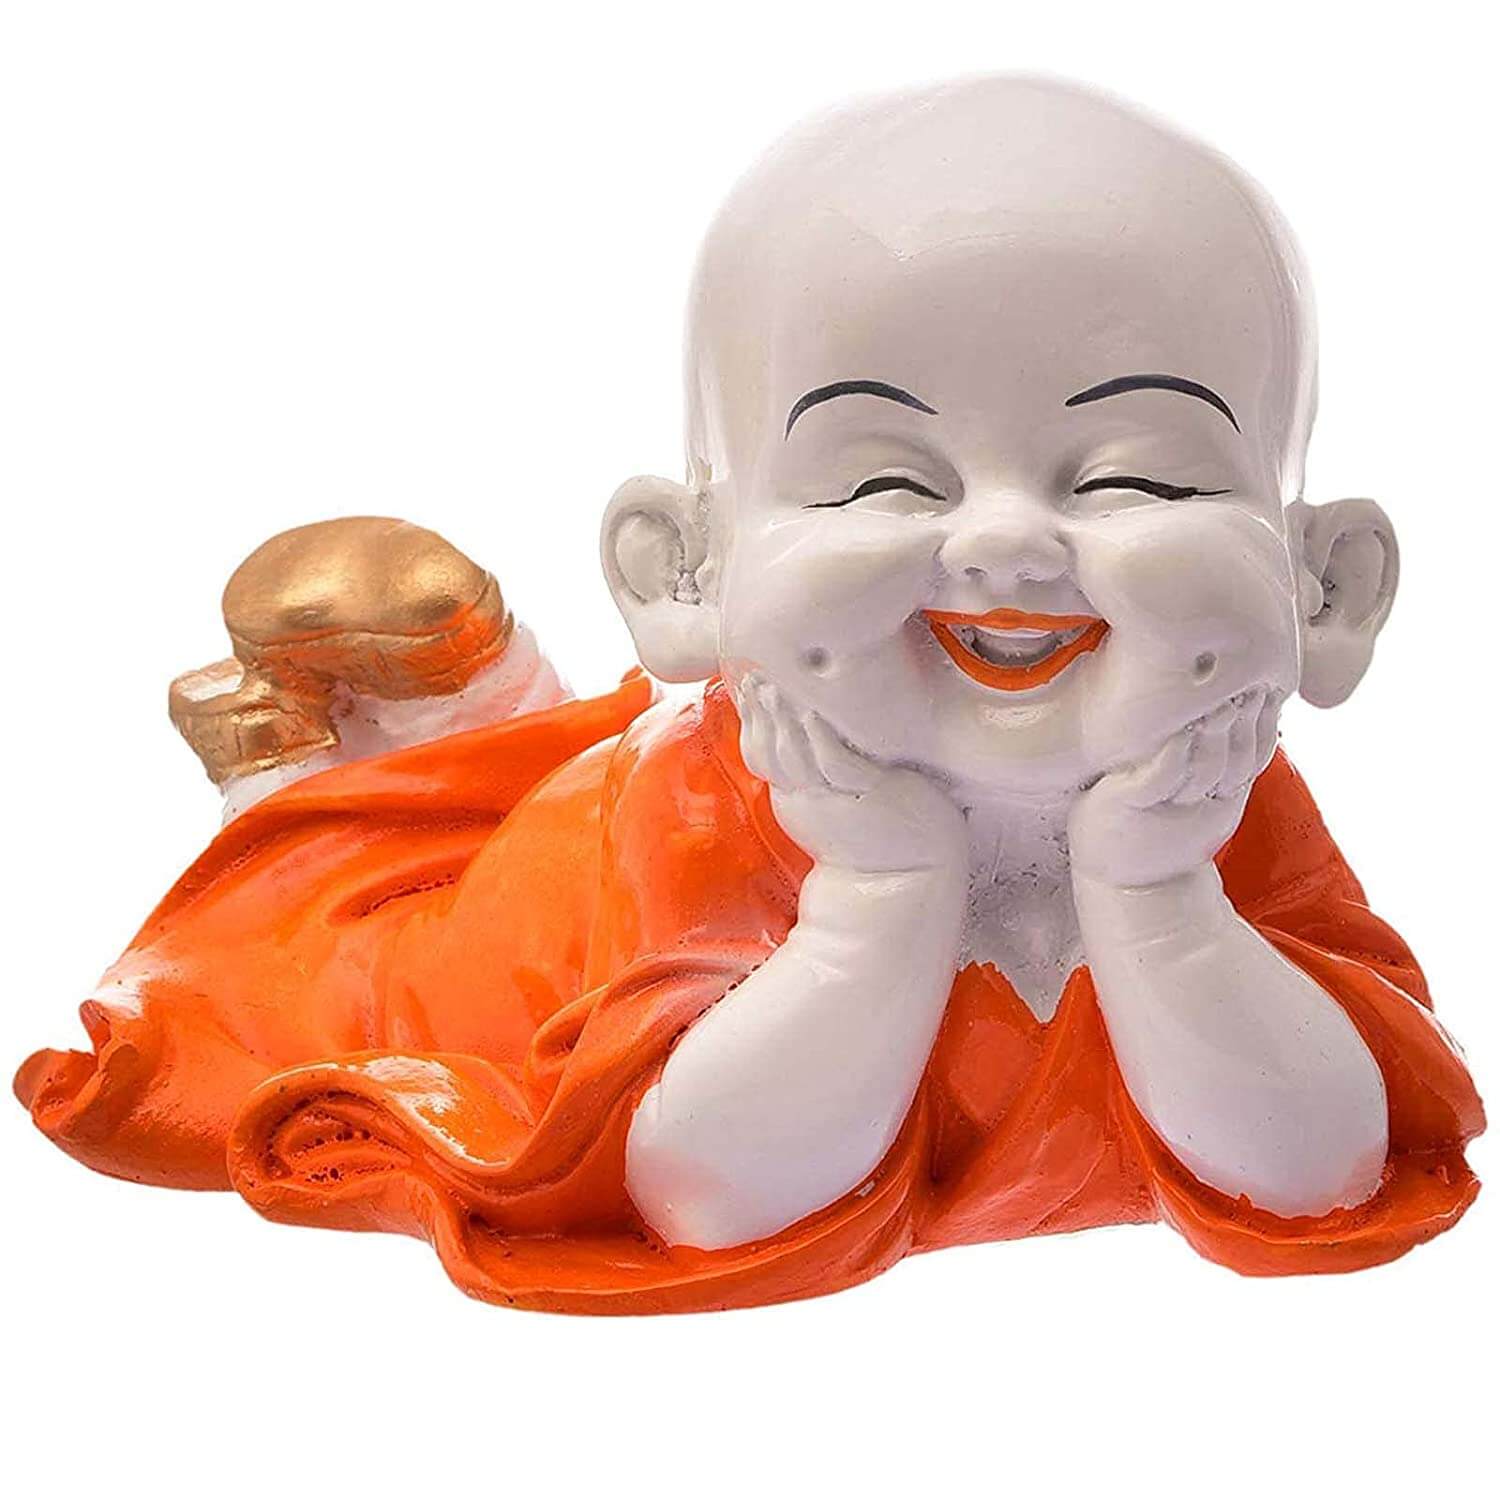 Laughing Bhuddha Showpiece Baby Buddha^decorative items for home^home decor^home decor items for living room^wall decor for living room^gifts